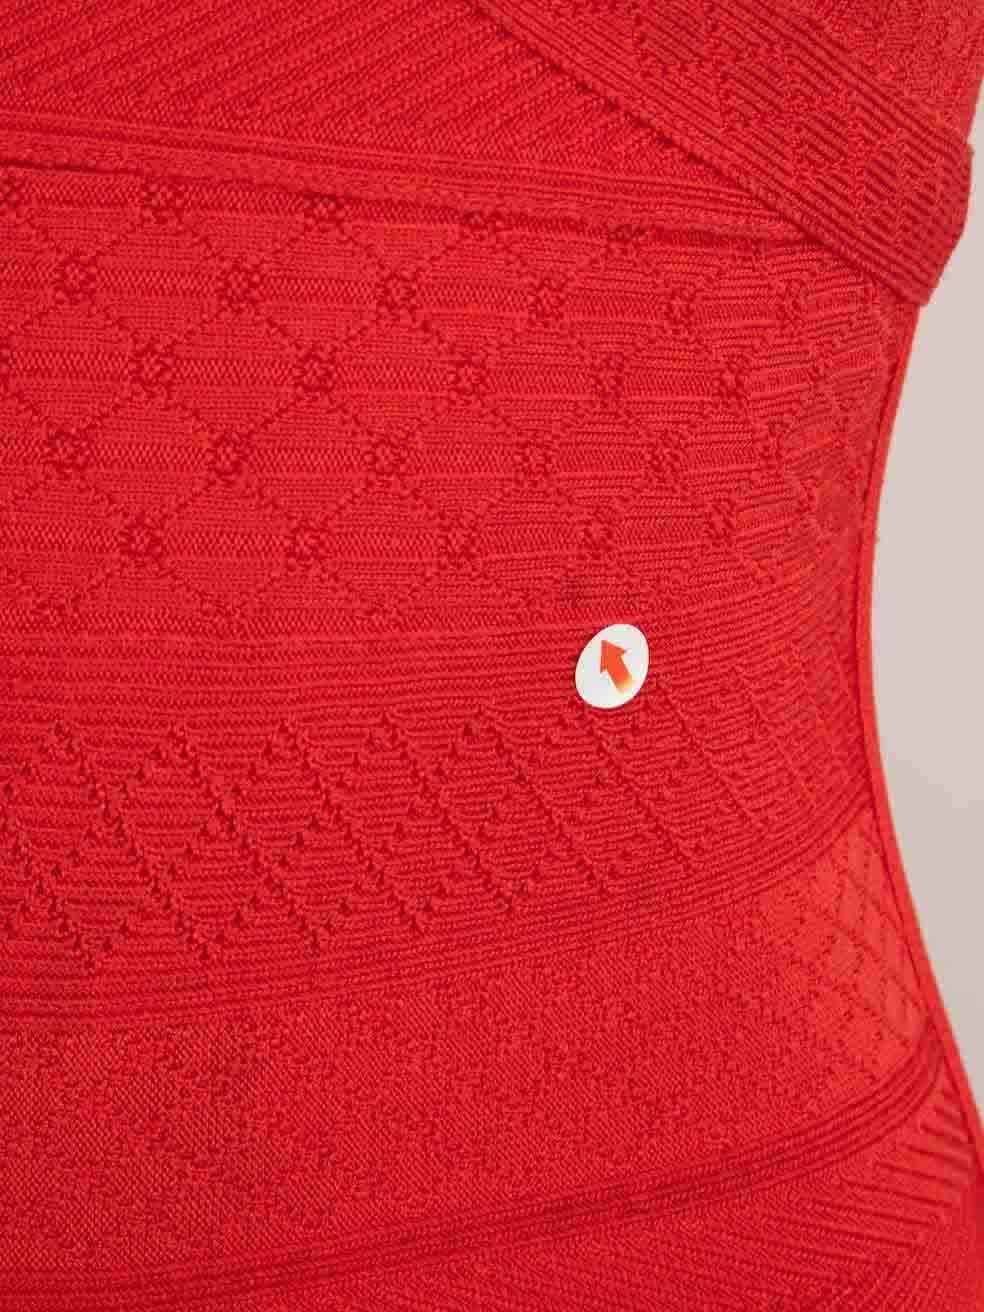 Herve Leger Red V-Neck Knee Length Knit Dress Size S For Sale 1